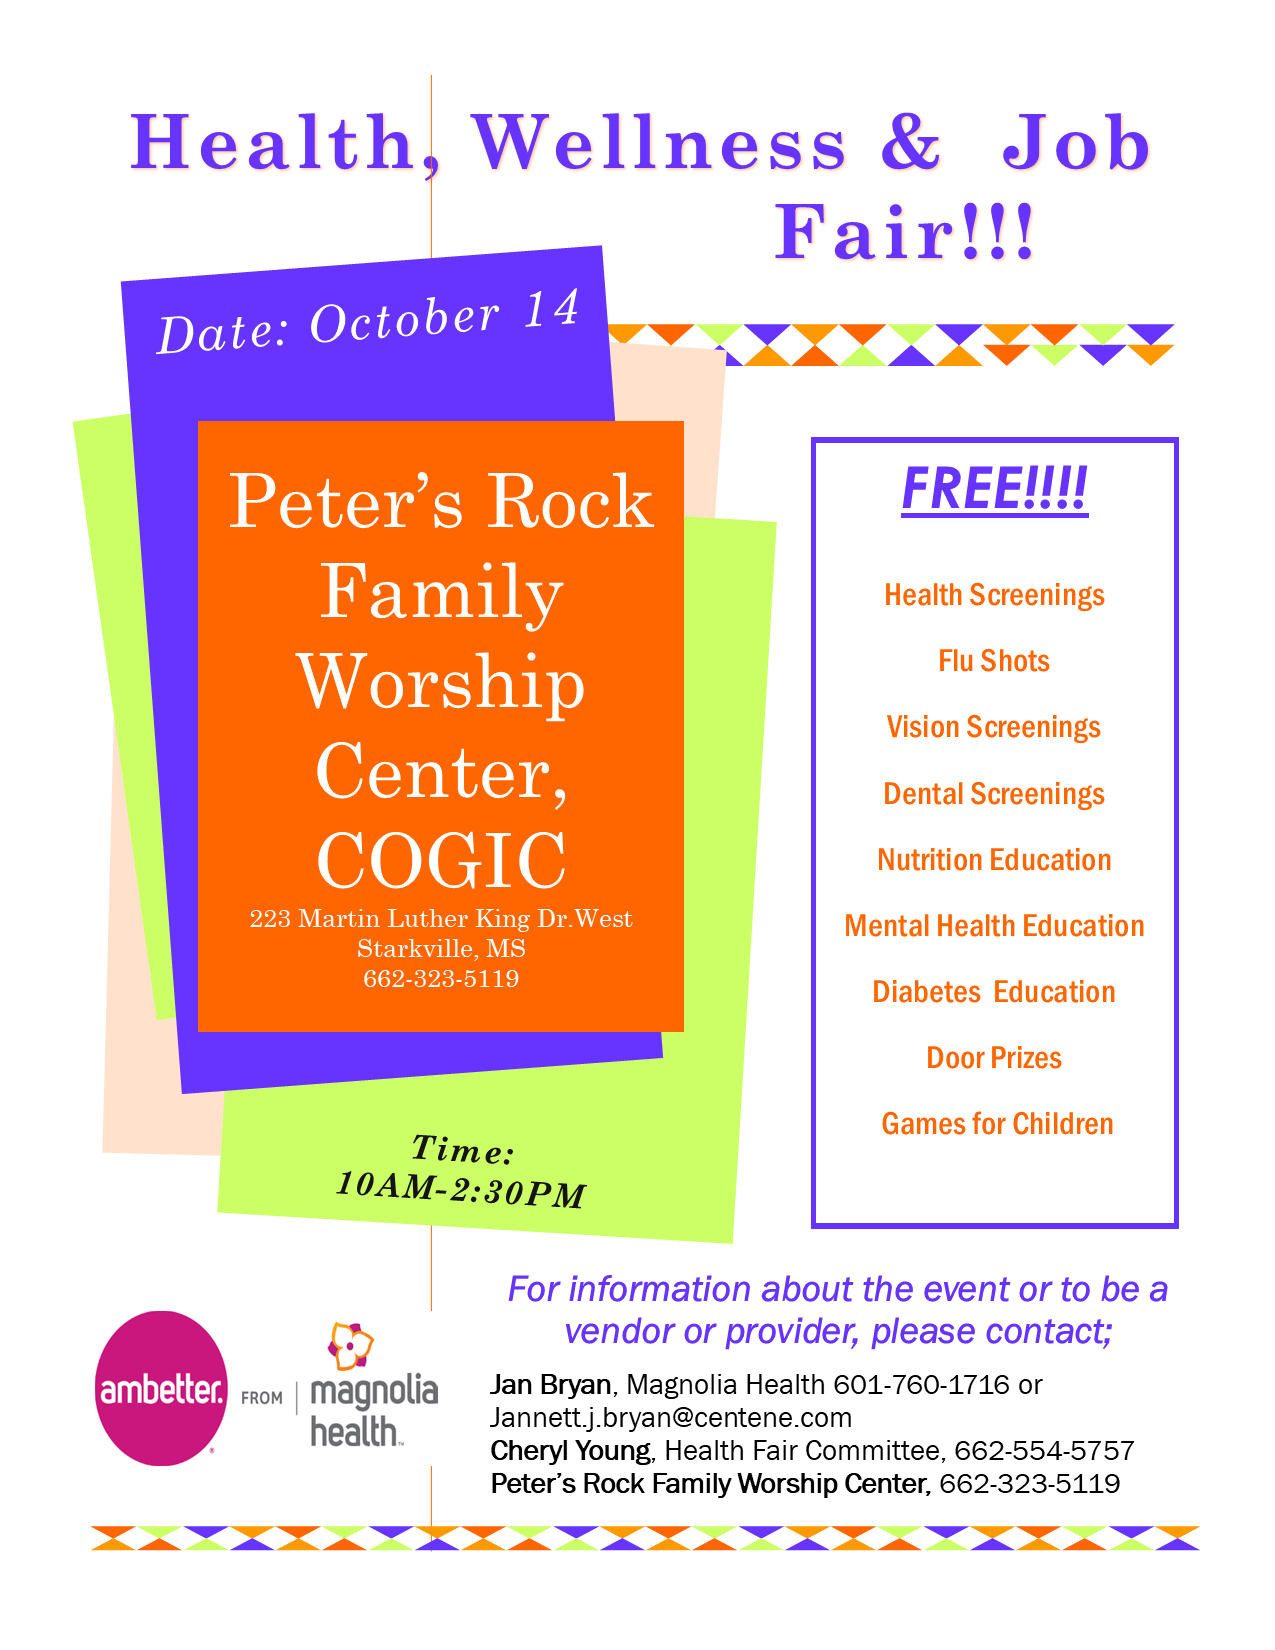 Peter’s Rock Family Worship Center, COGIC, Health, wellness and Job Fair.